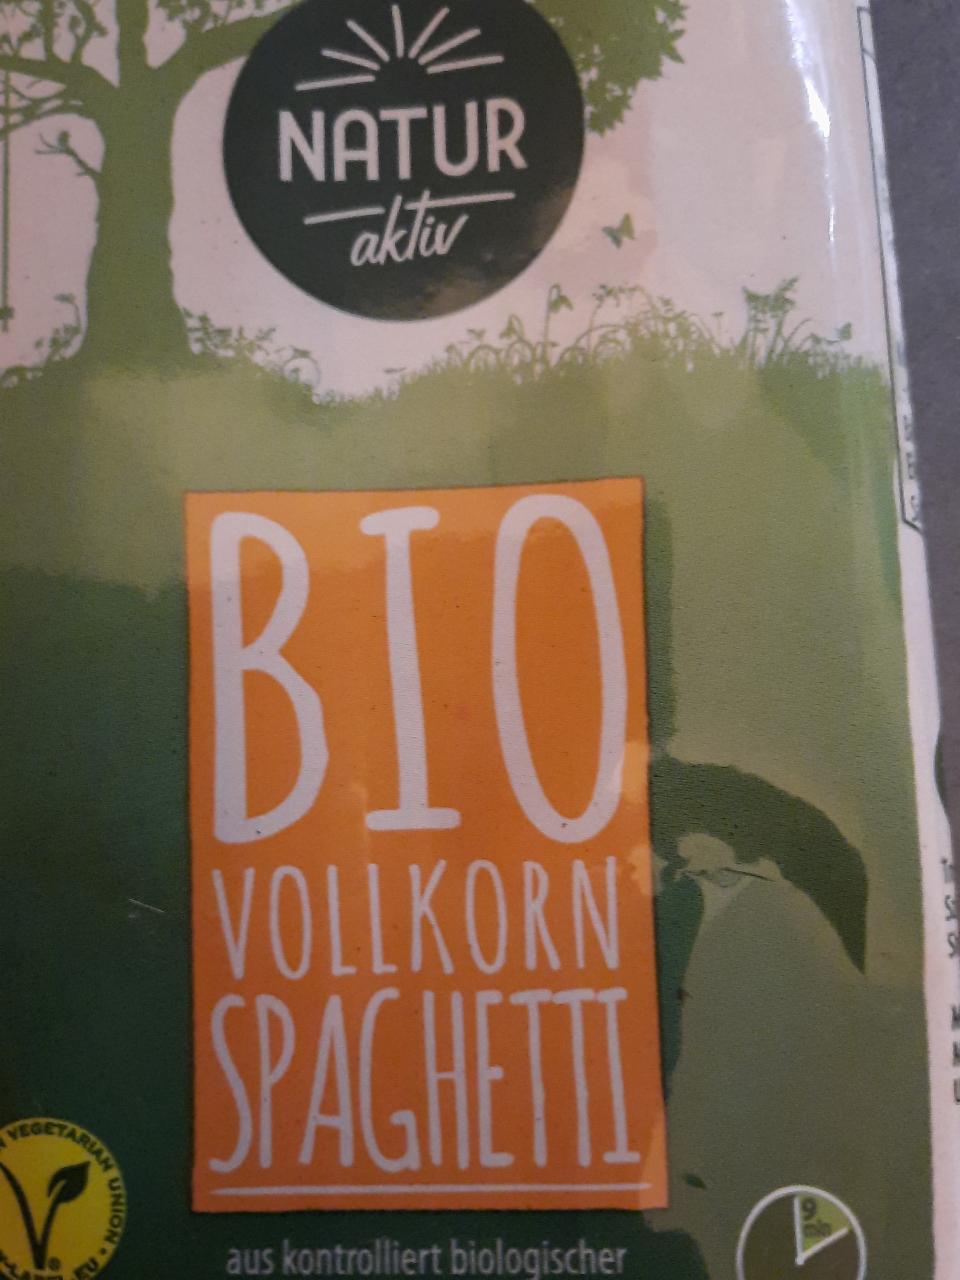 Fotografie - Bio Vollkorn Spaghetti Natur aktiv